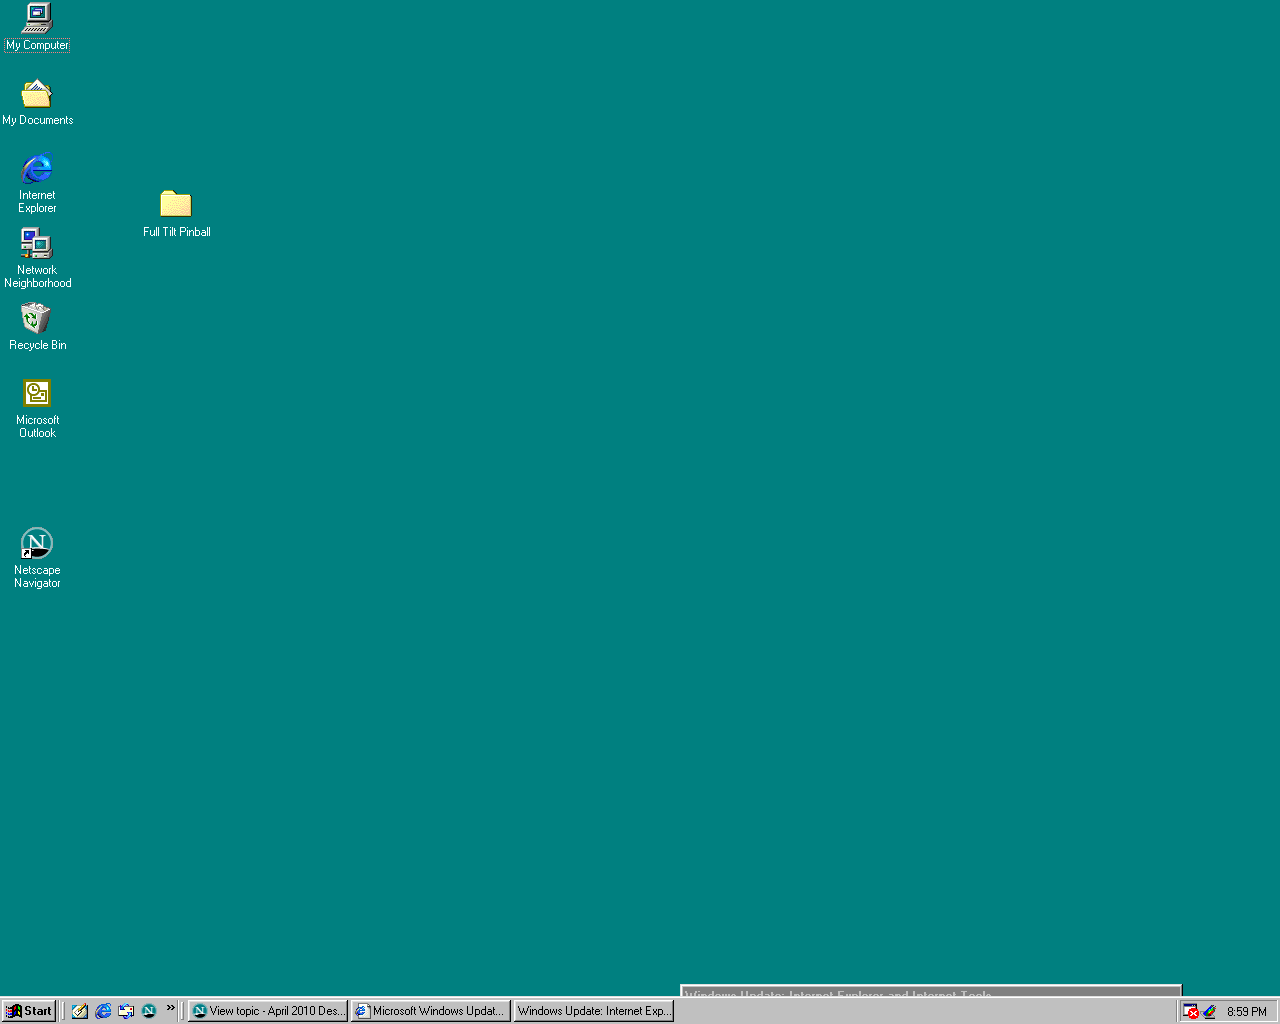 Hình nền máy tính Windows 98: Một khoảng thời gian đáng nhớ đã trở lại với những hình nền máy tính Windows 98 đầy cổ điển. Hãy lấy lại kí ức và trải nghiệm cảm giác một thời với những hình ảnh hoài niệm đầy tươi vui.